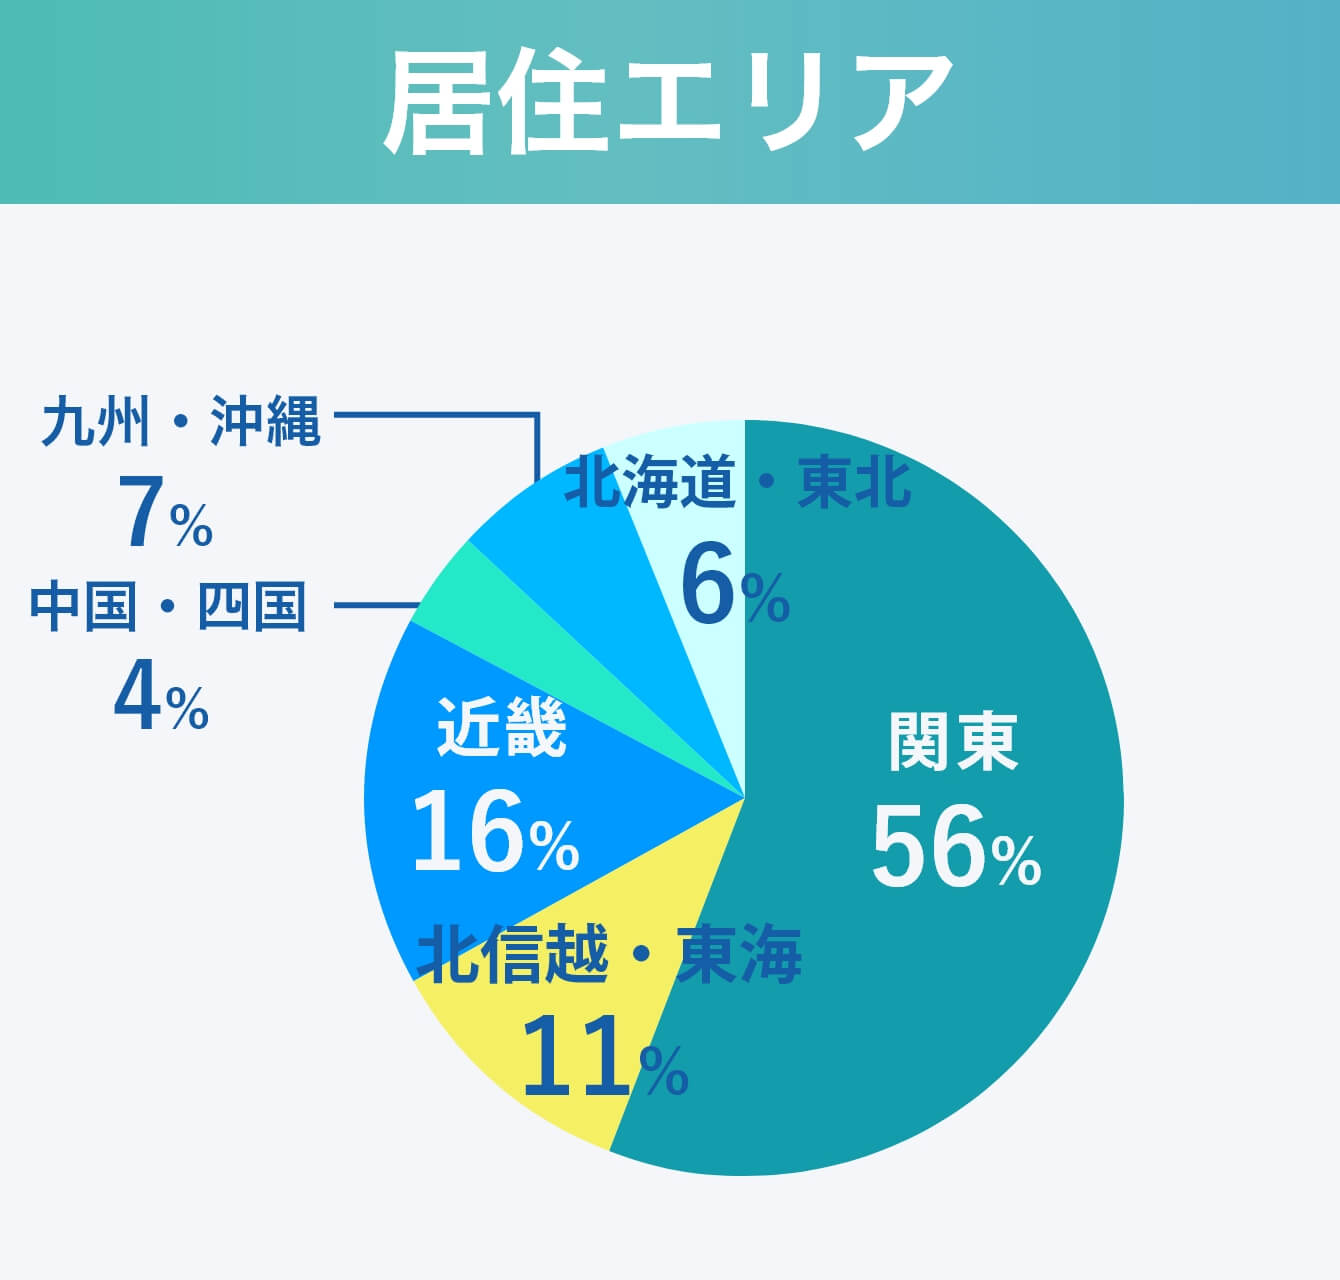 居住エリア：関東56%